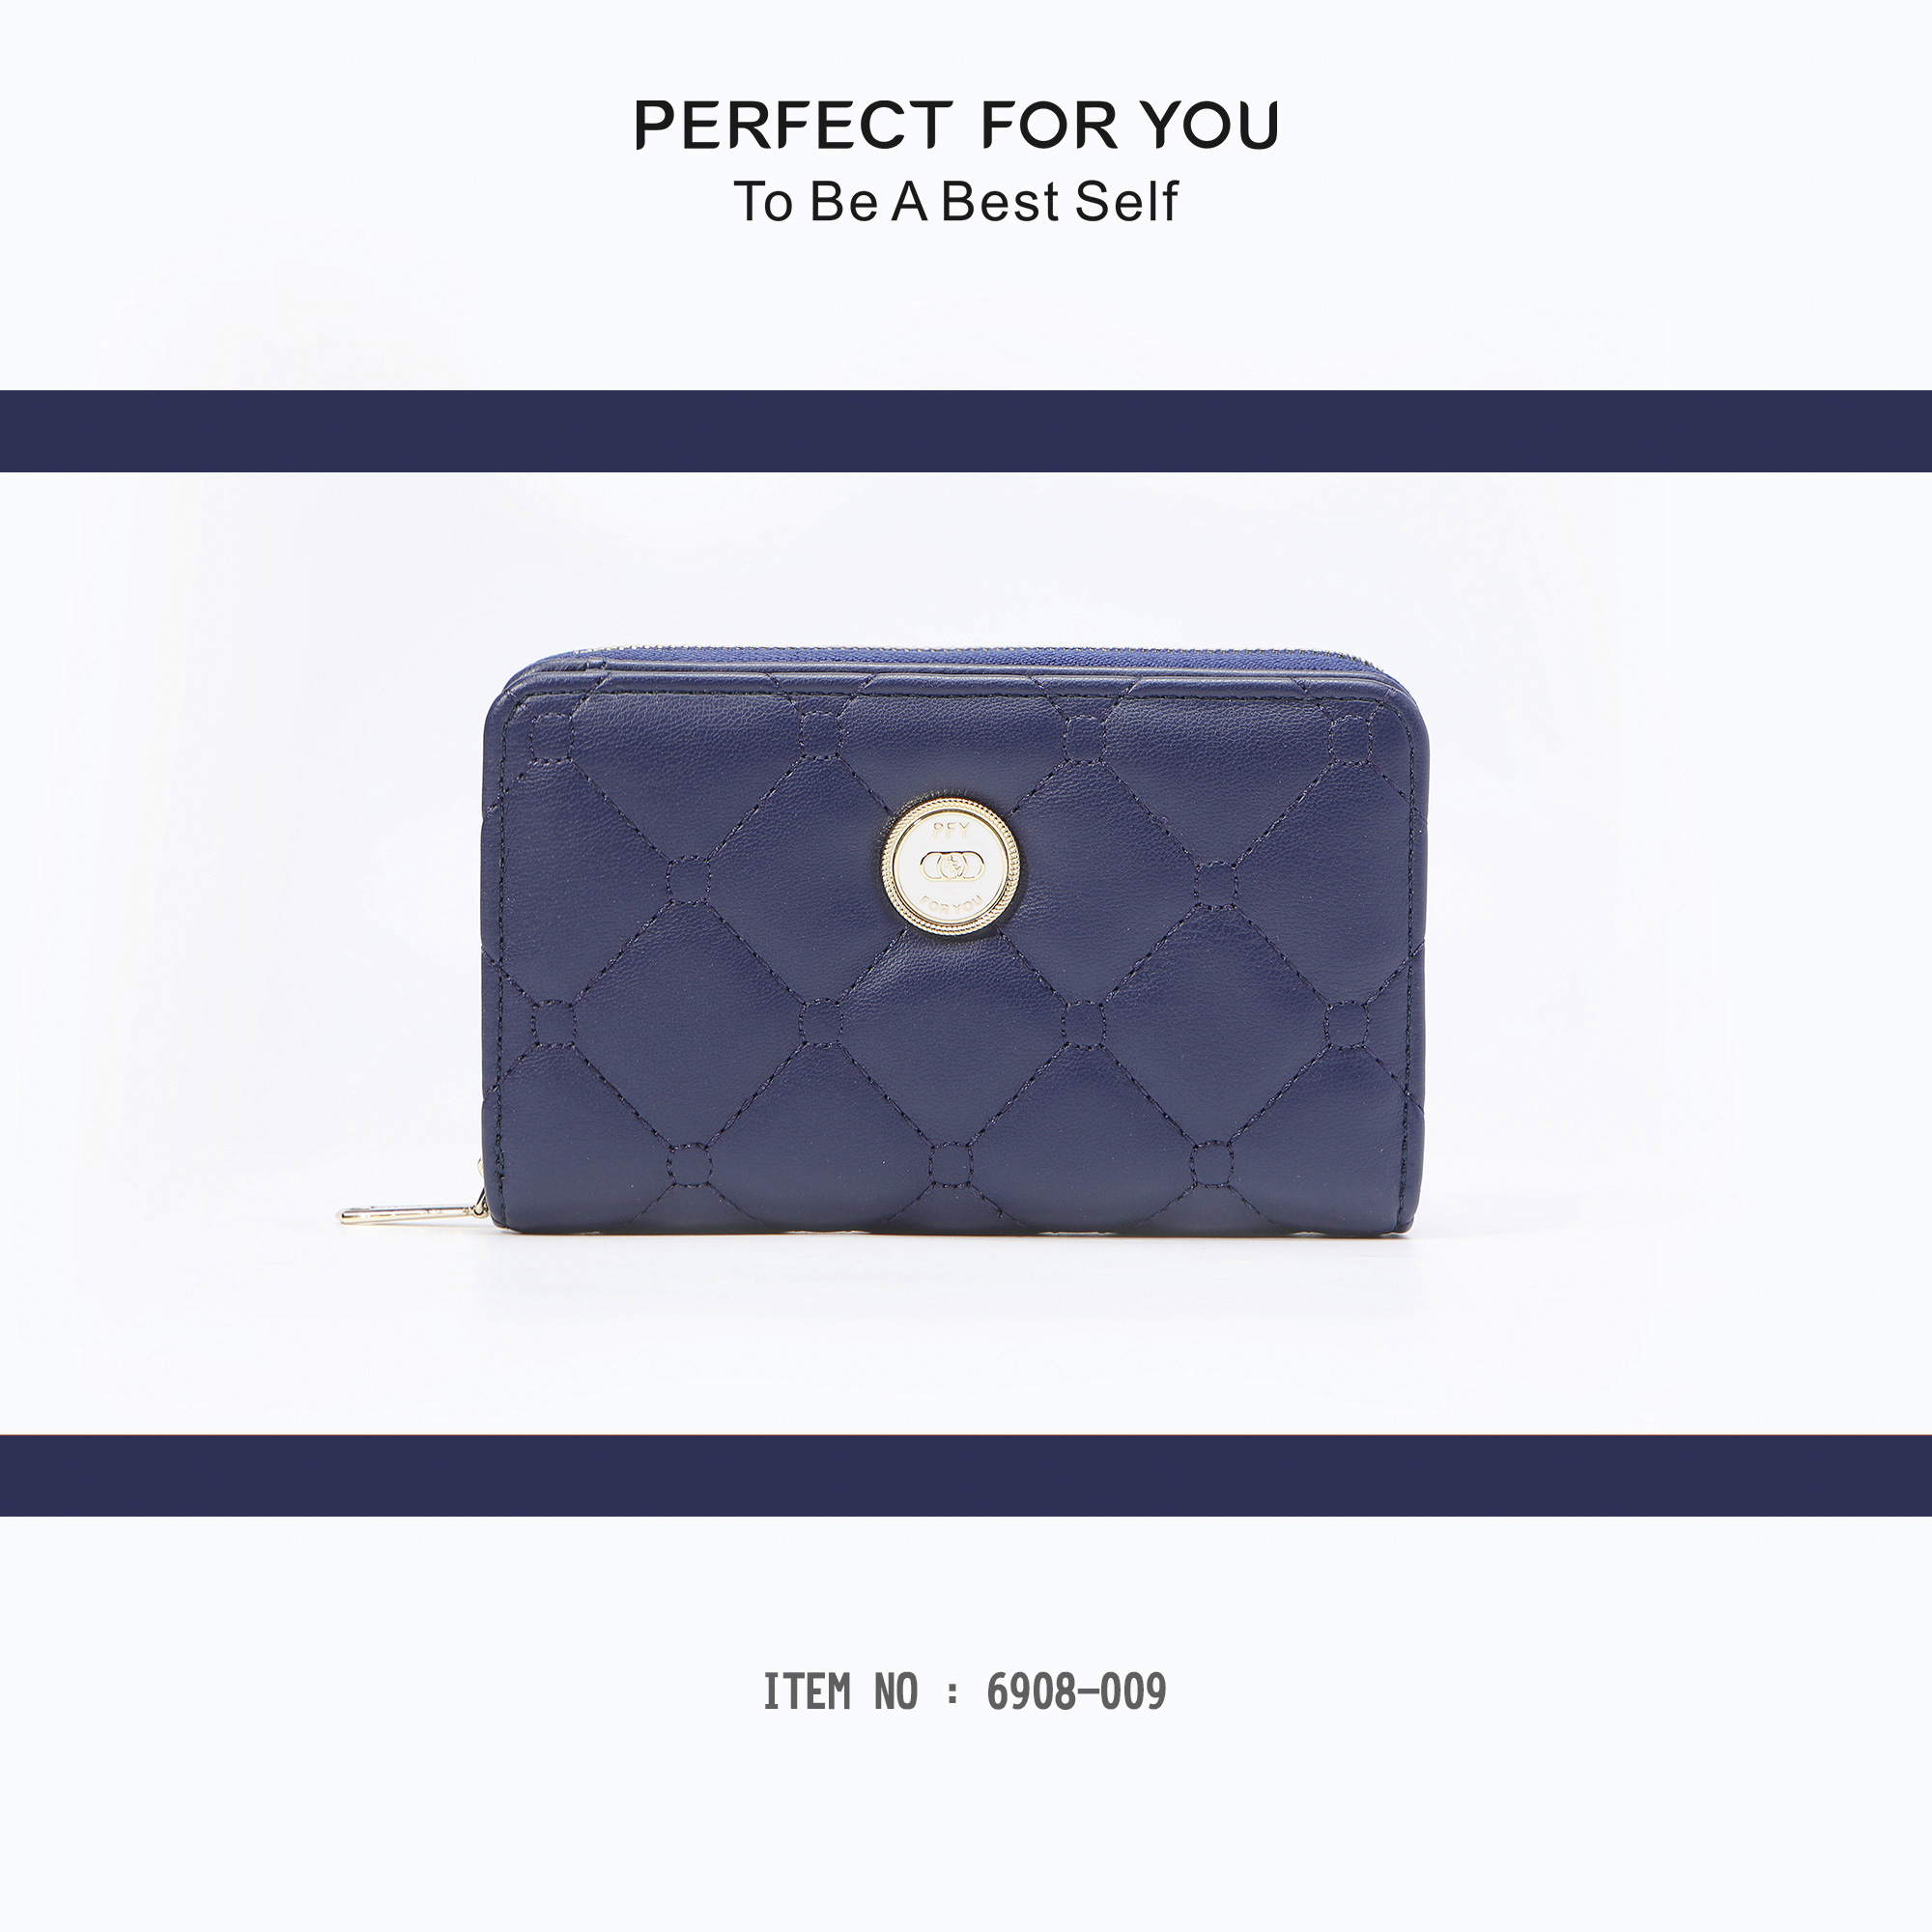 รูปภาพเพิ่มเติมเกี่ยวกับ กระเป๋าสตางค์ PERFECT FOR YOU (Forever Young)🔥🔥🔥กระเป๋าสตางค์ผู้ญิง กระเป๋าสตางค์ใบกลางผู้หญิง  6908-009